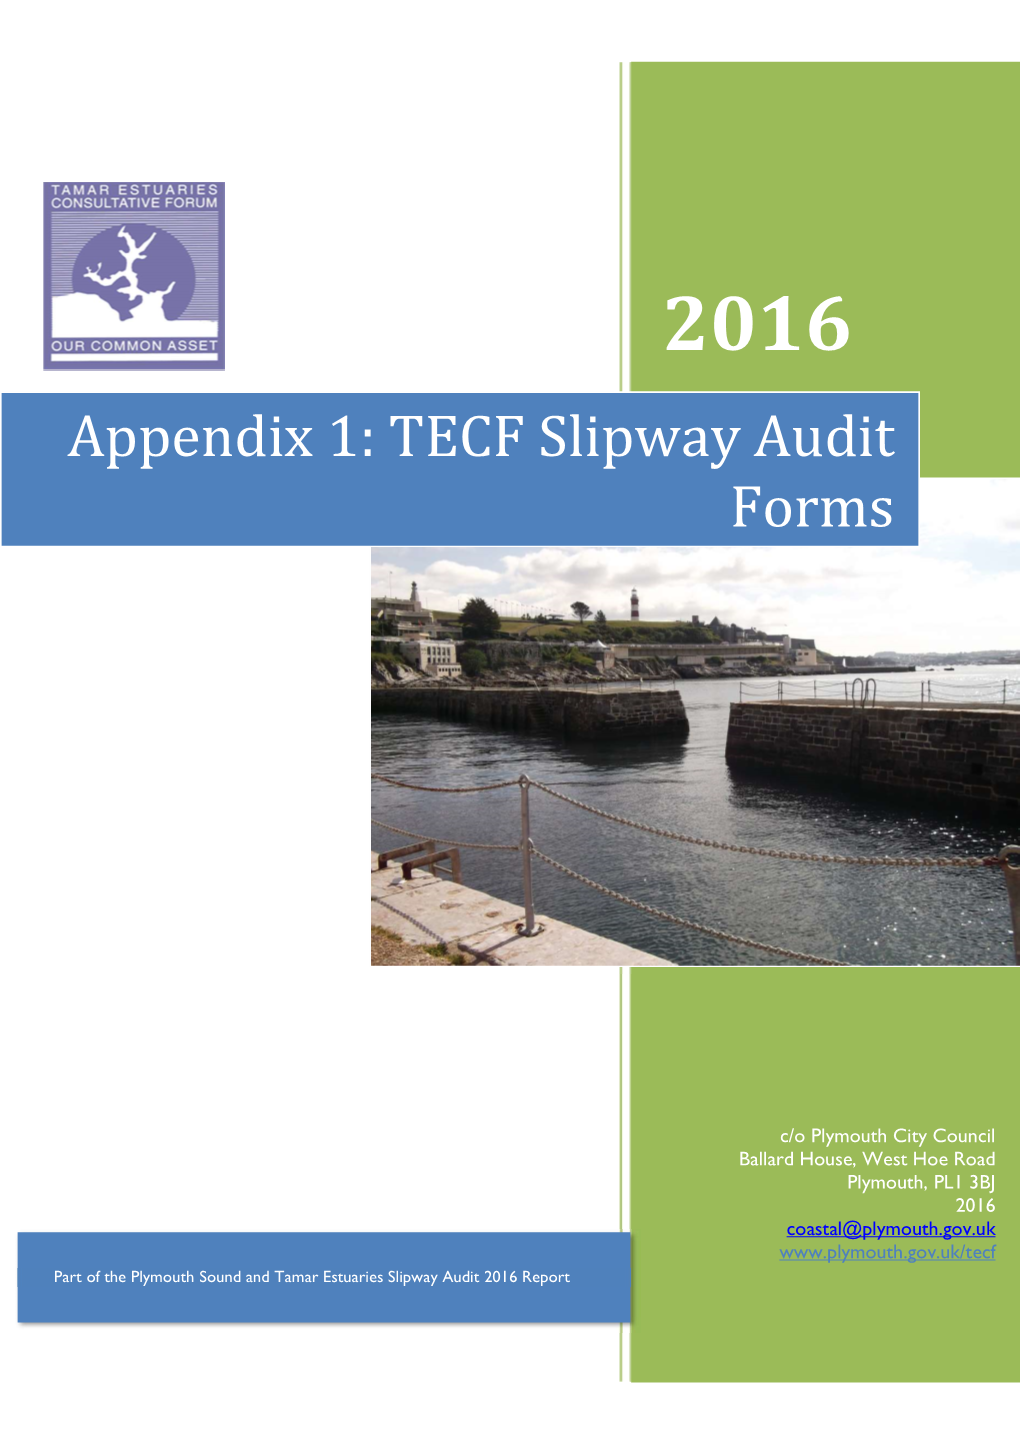 TECF Slipway Audit 2016 Appendix 1 Forms